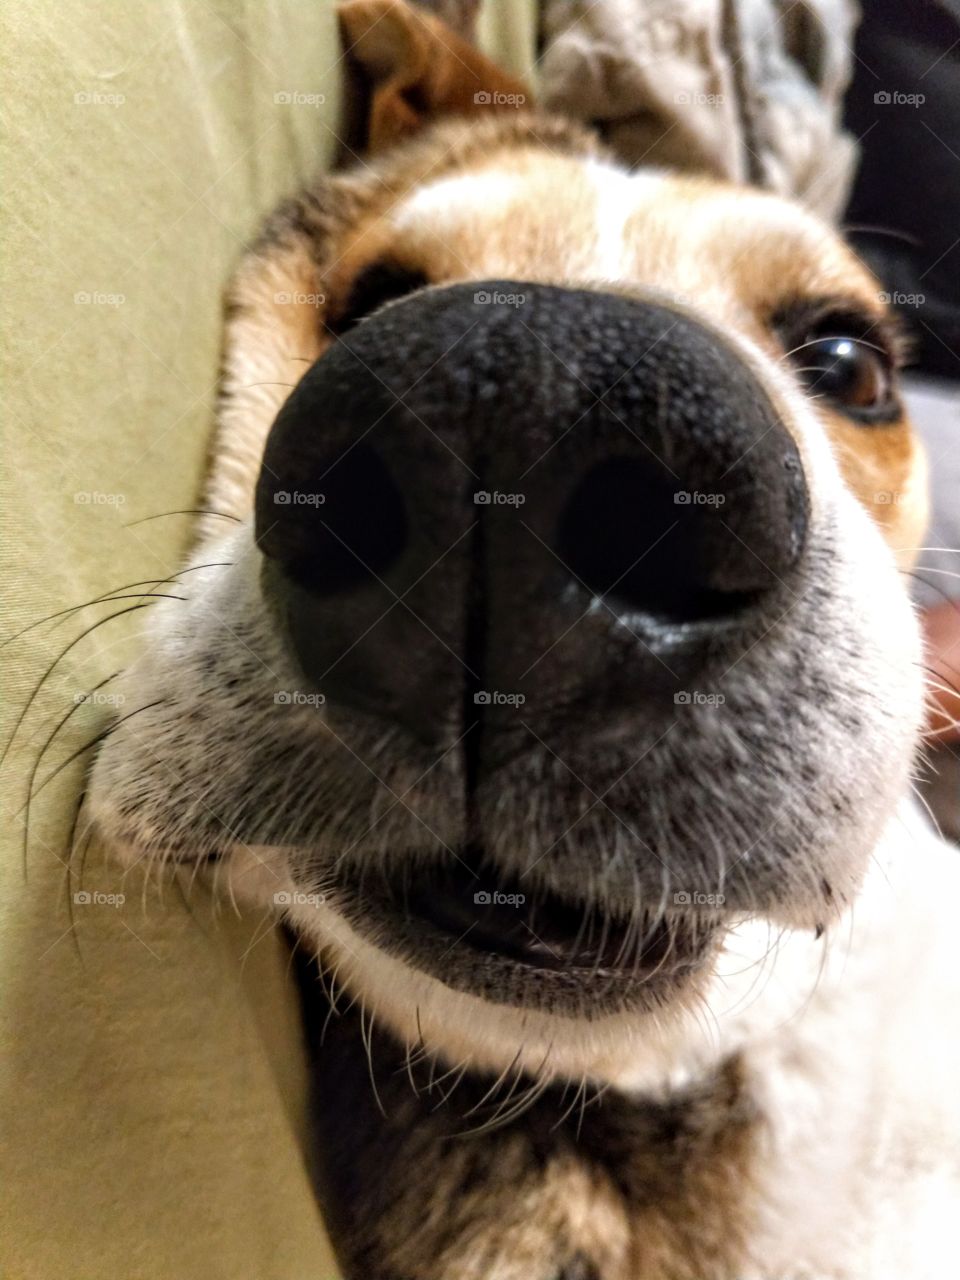 Up close shot of a dog.